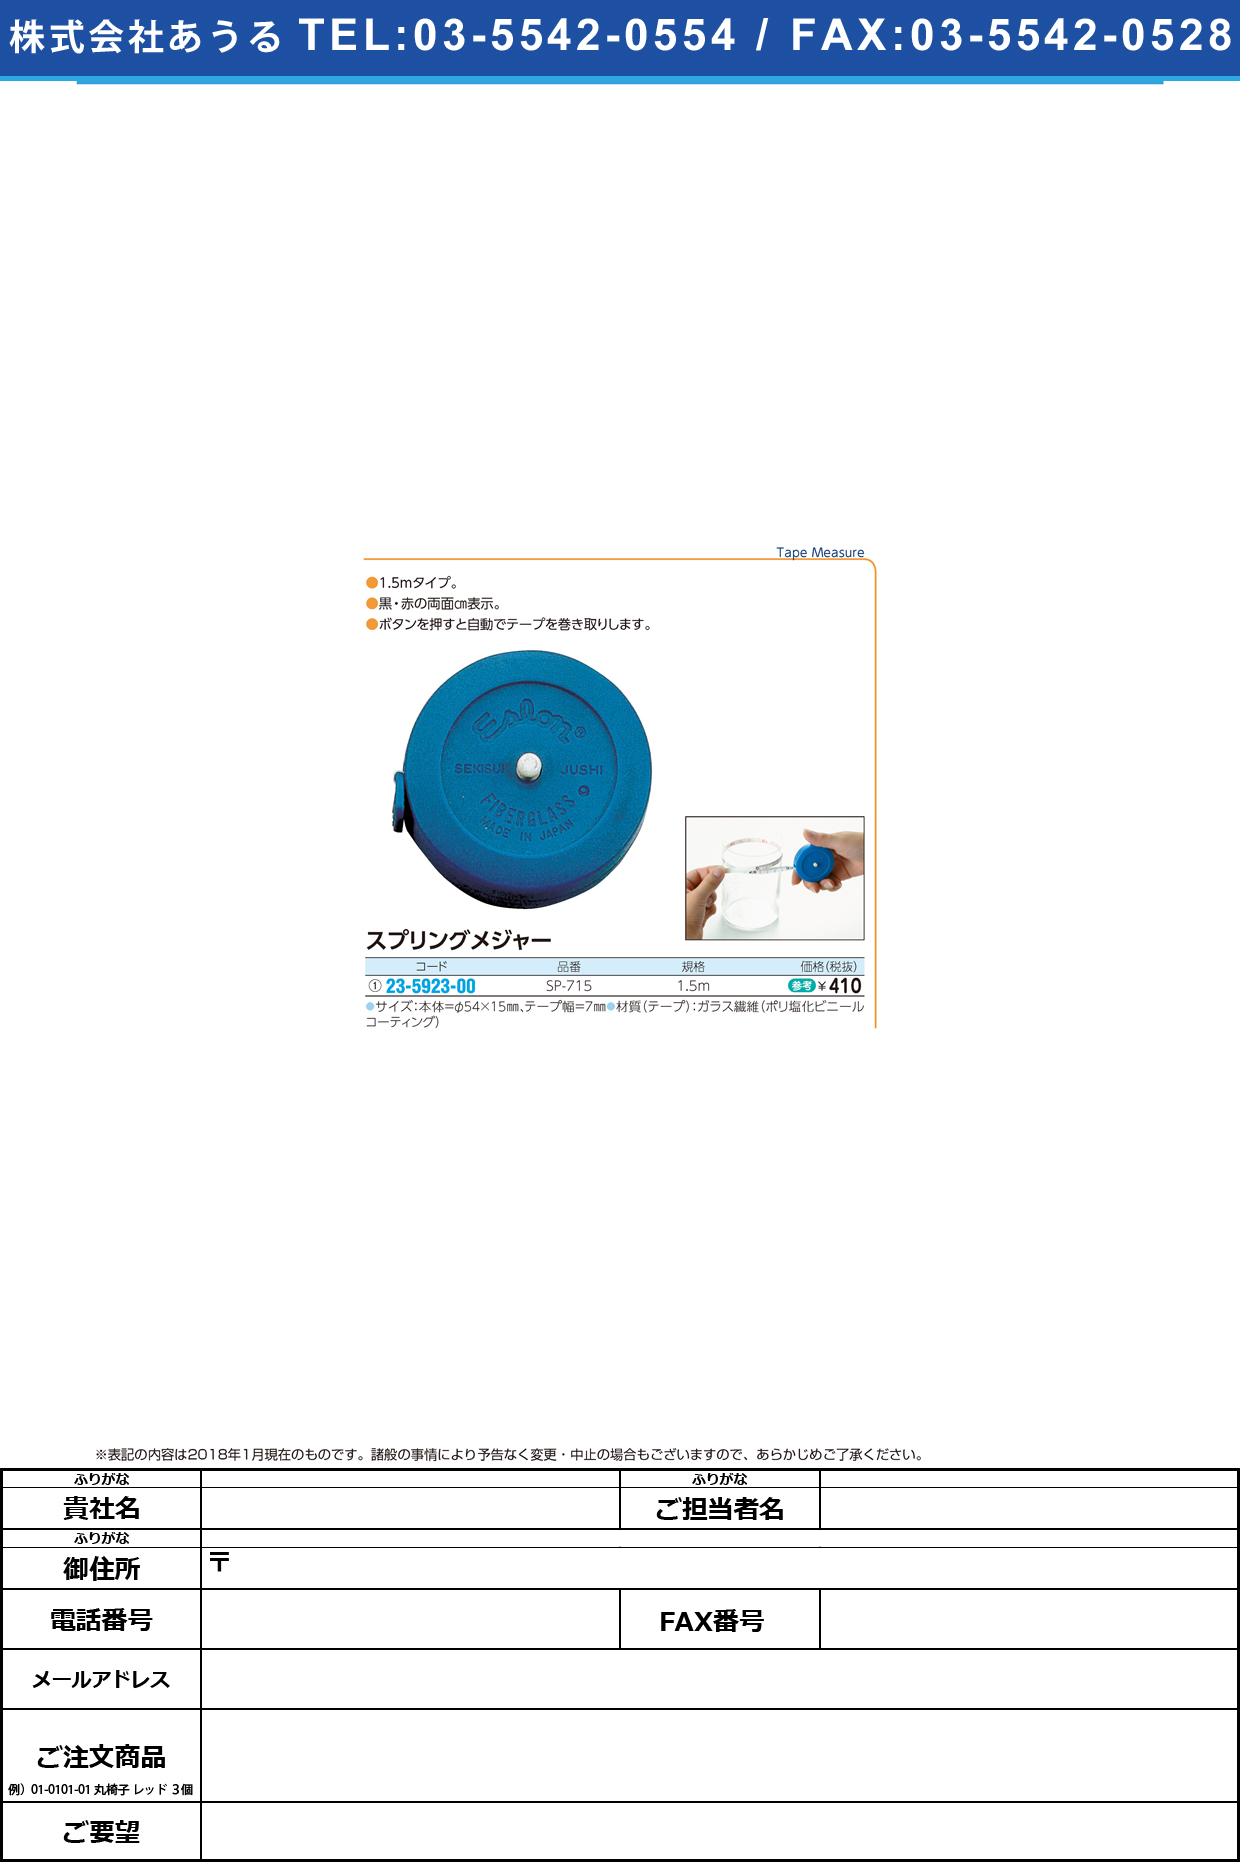 (23-5923-00)スプリングメジャー SP-715(1.5M) ｽﾌﾟﾘﾝｸﾞﾒｼﾞｬｰ【1個単位】【2018年カタログ商品】